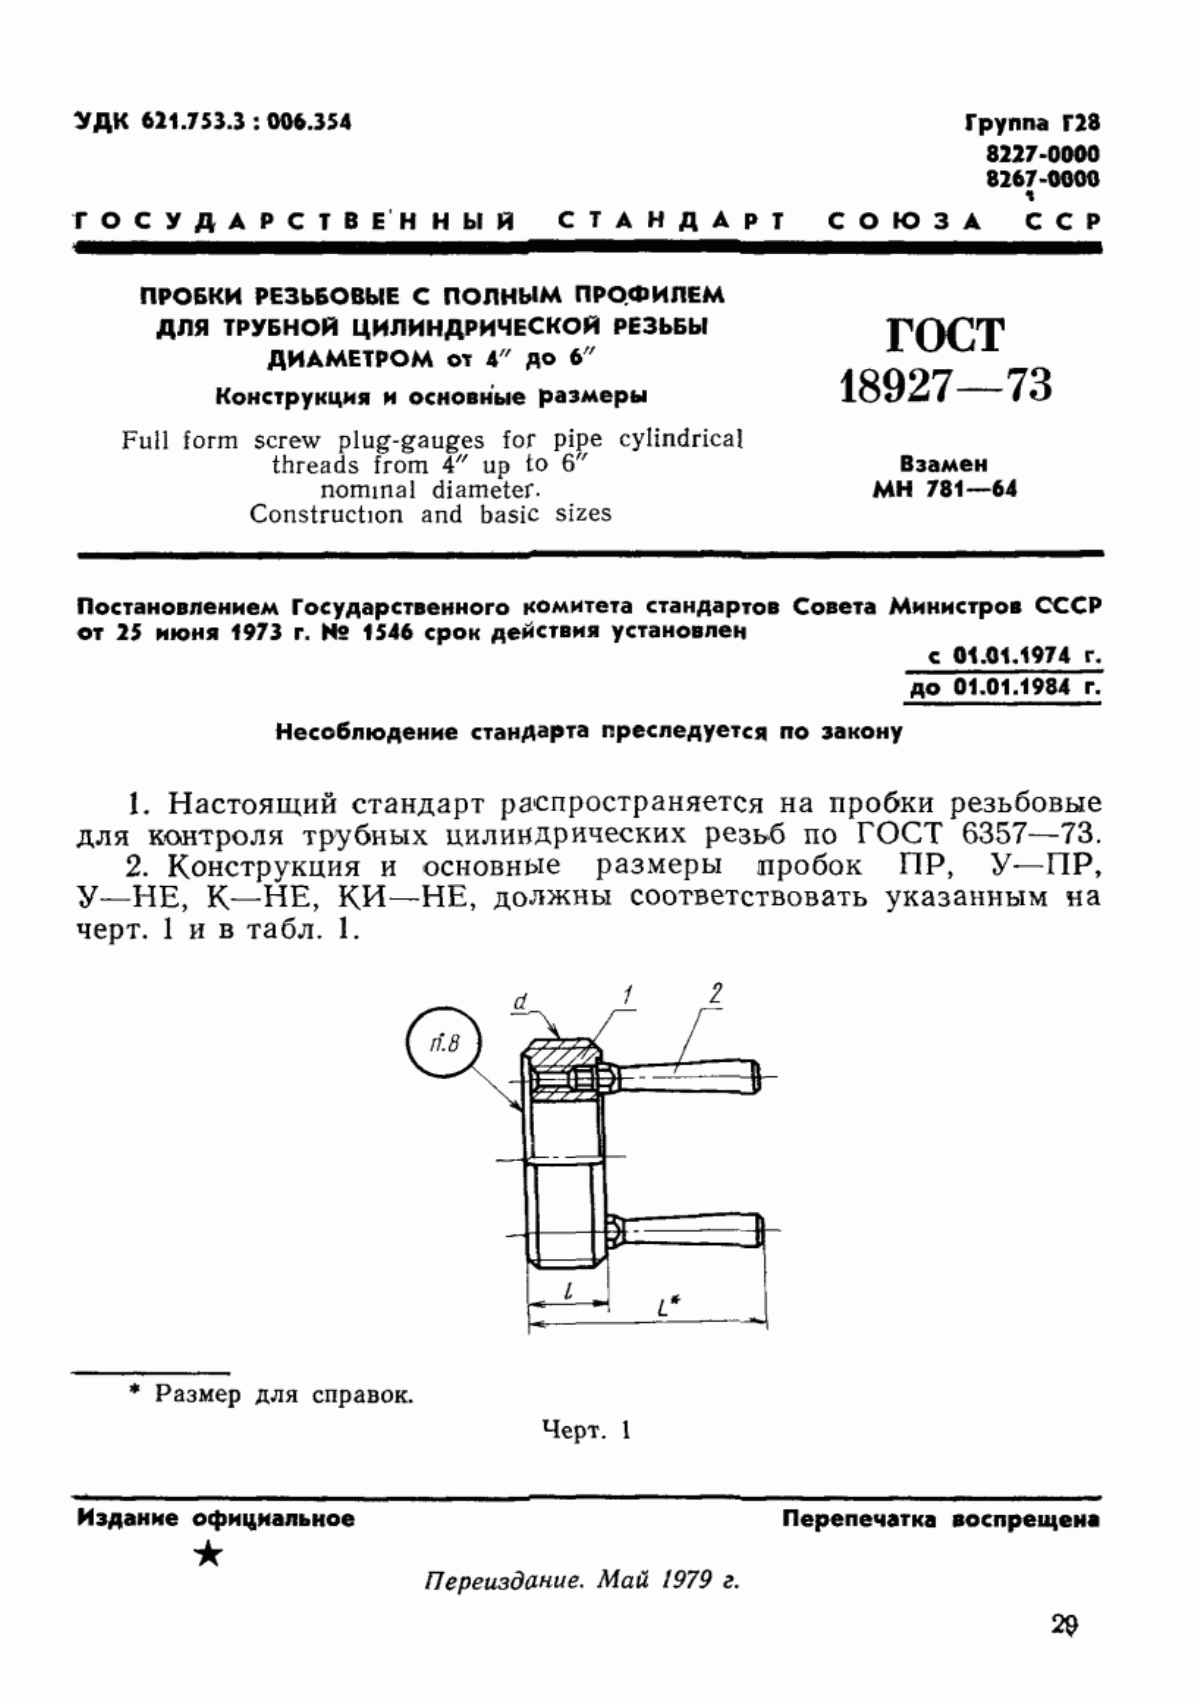 ГОСТ 18927-73 Пробки резьбовые с полным профилем для трубной цилиндрической резьбы диаметром от 4" до 6". Конструкция и основные размеры